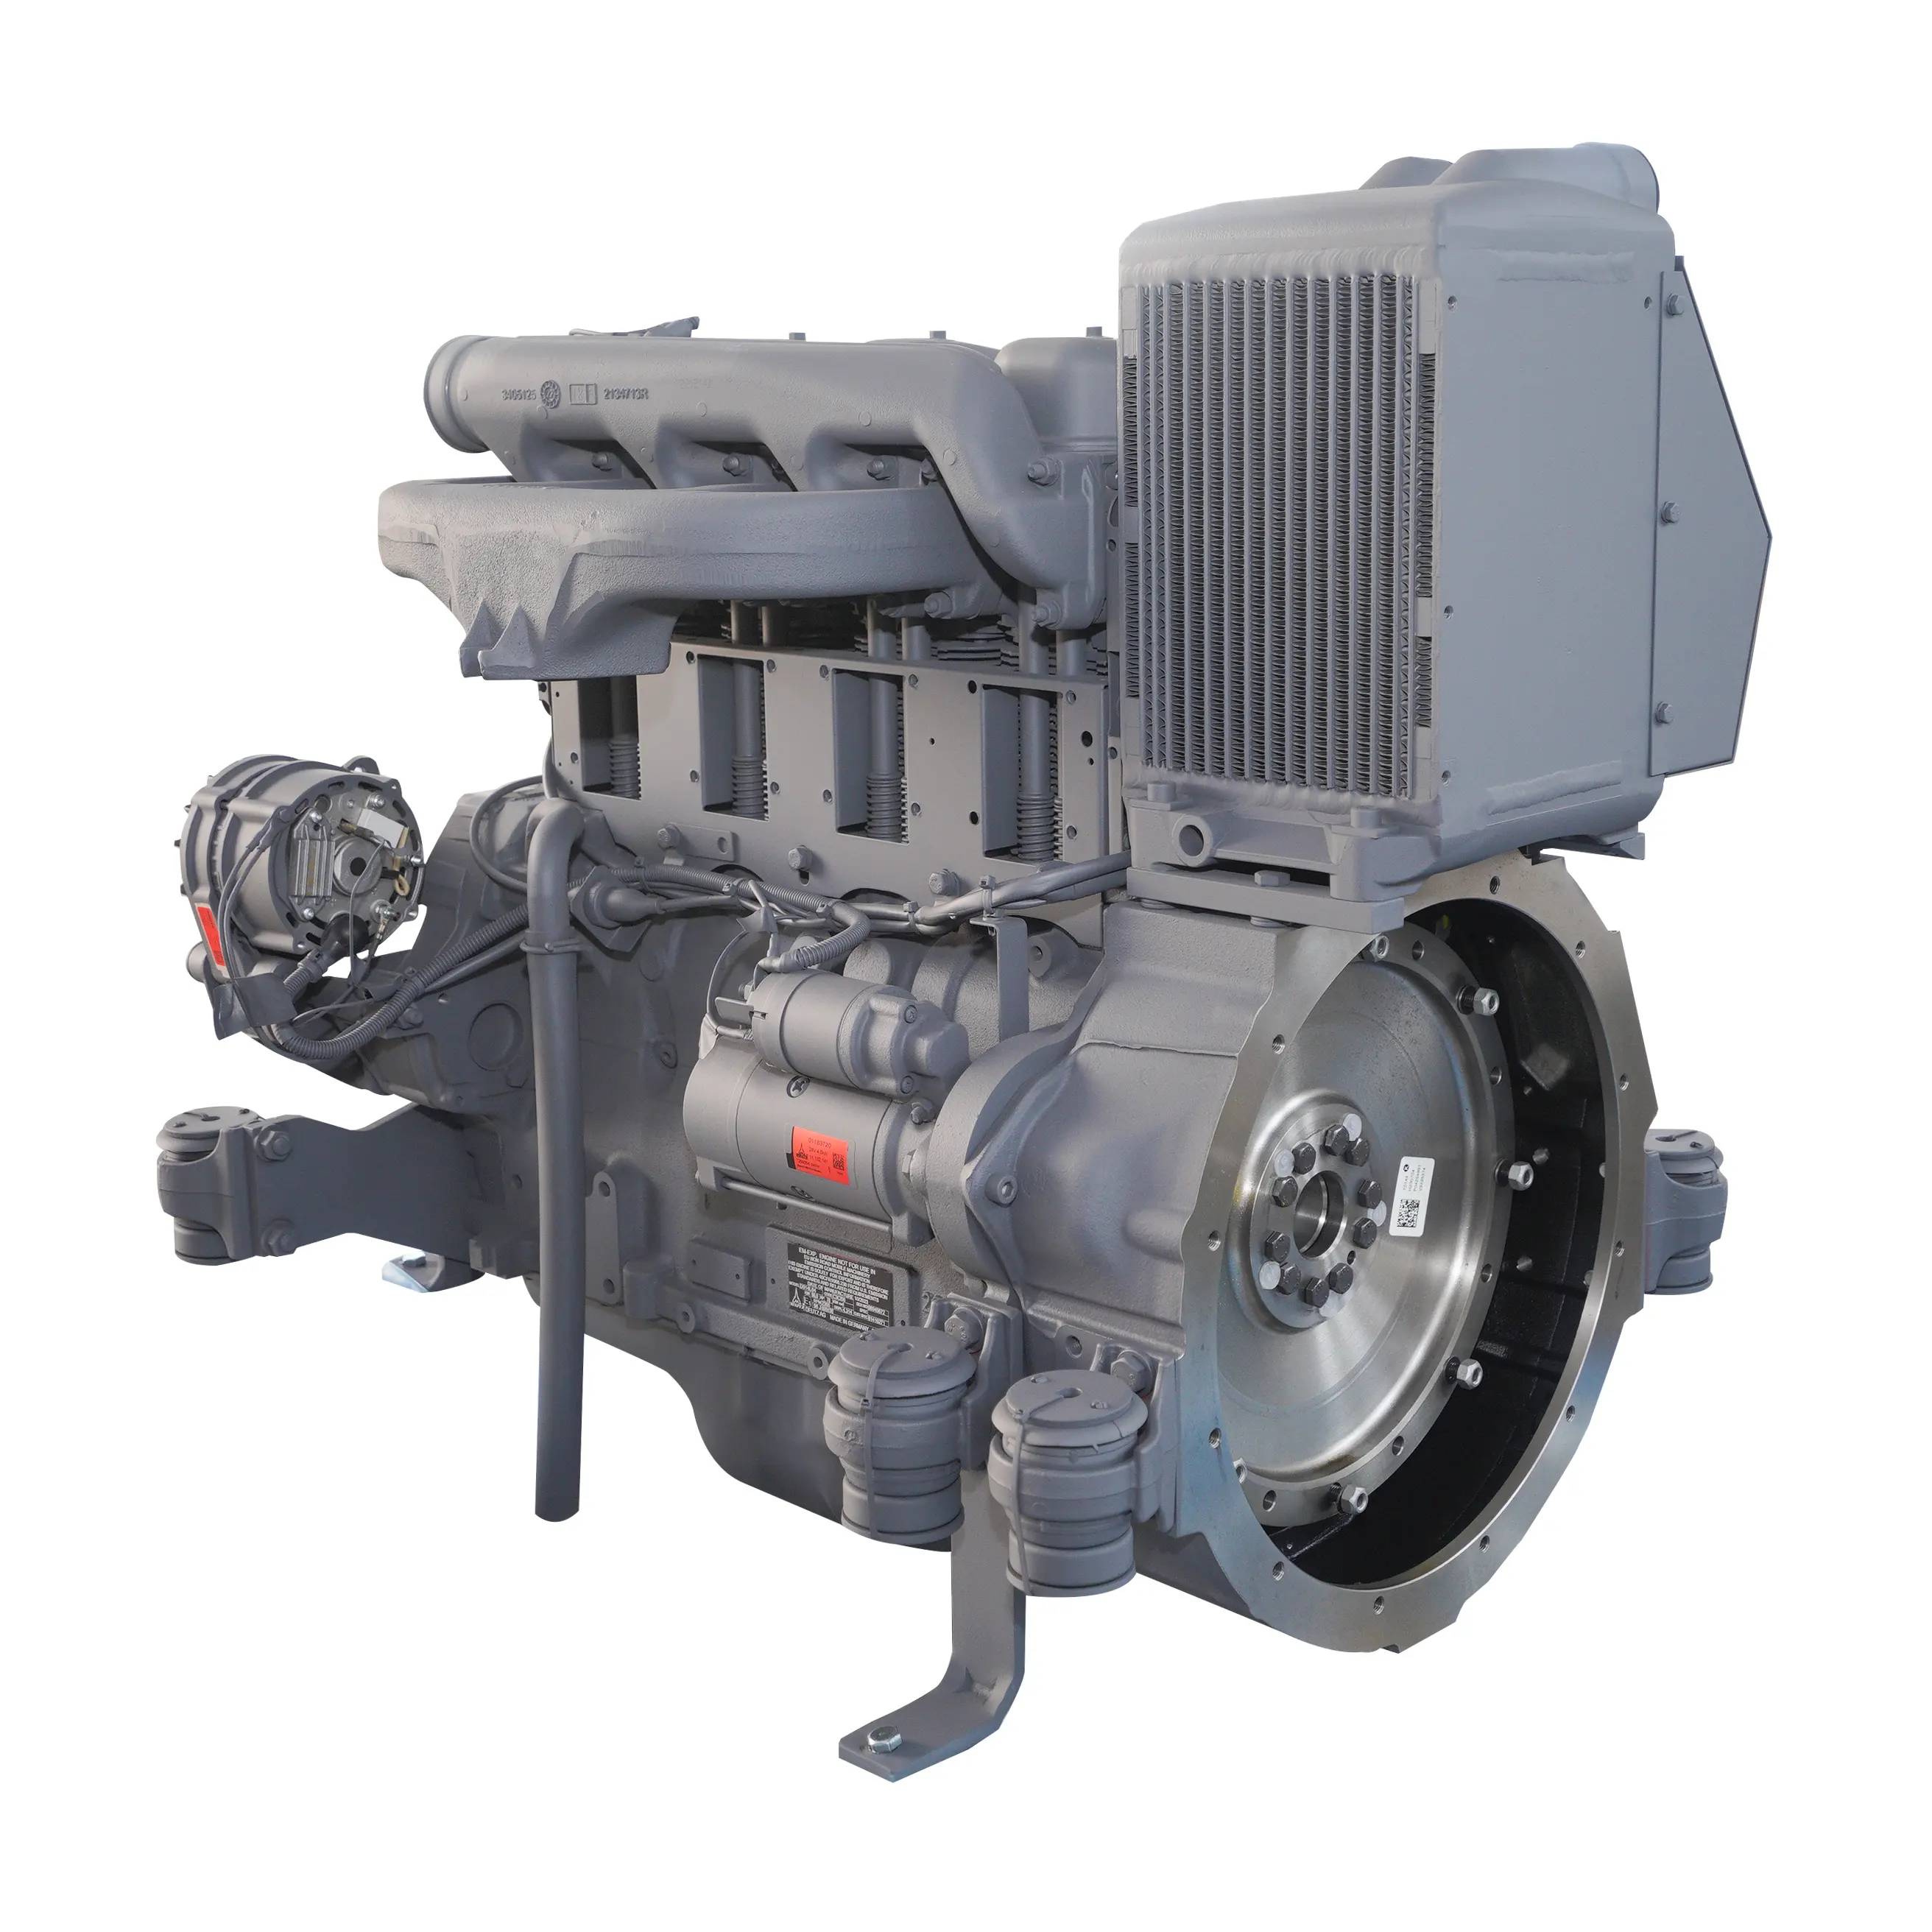 Genuine style deutz 4 cylinder engine F4L912W Engines Diesel Engine for construction machinery